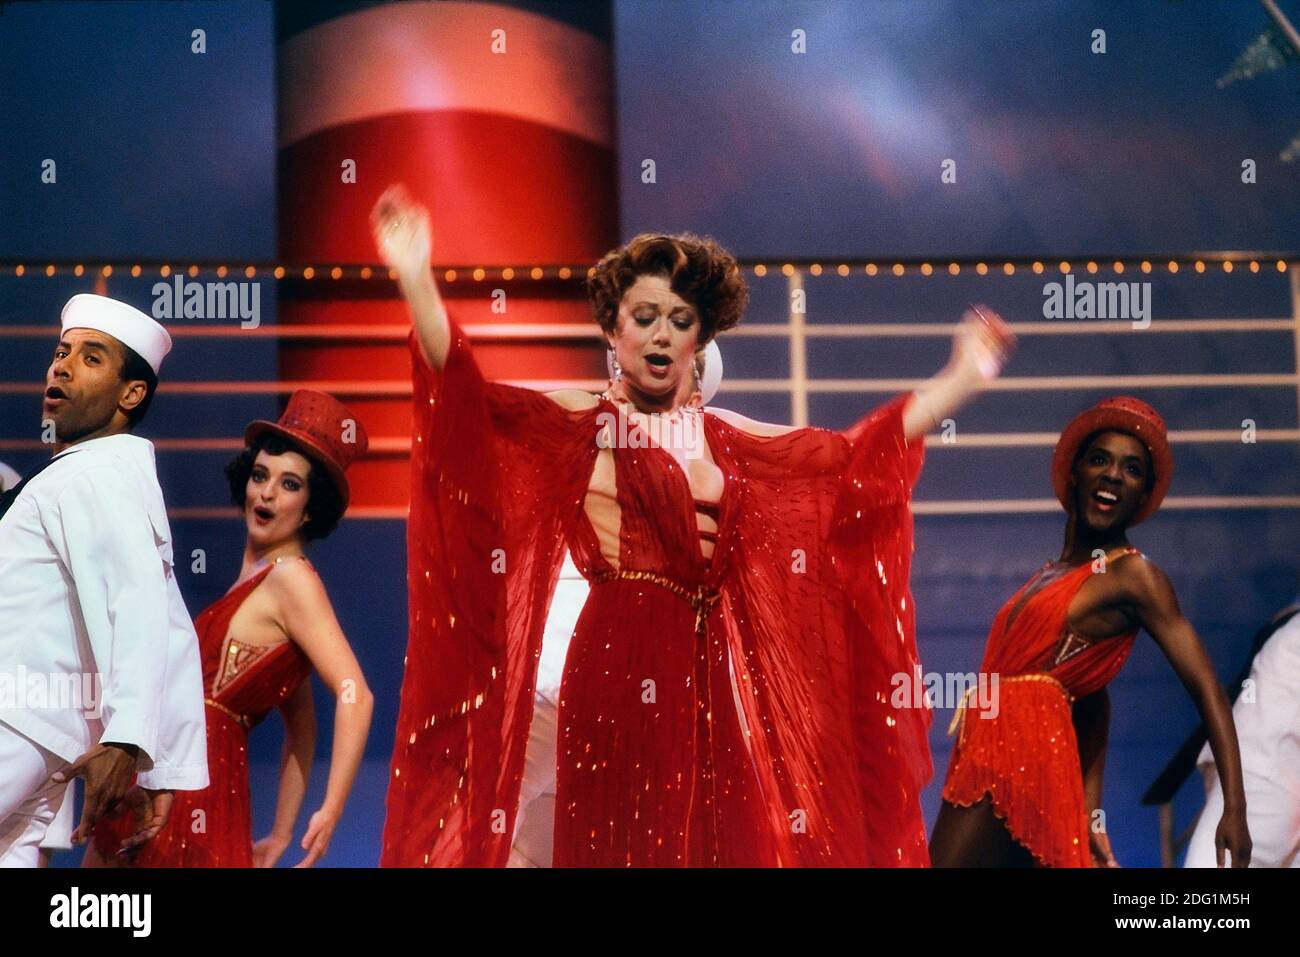 Elaine Paige sur scène dans Anything Goes, Prince Edward Theatre, Londres, Angleterre, Royaume-Uni. Vers 1989 Banque D'Images